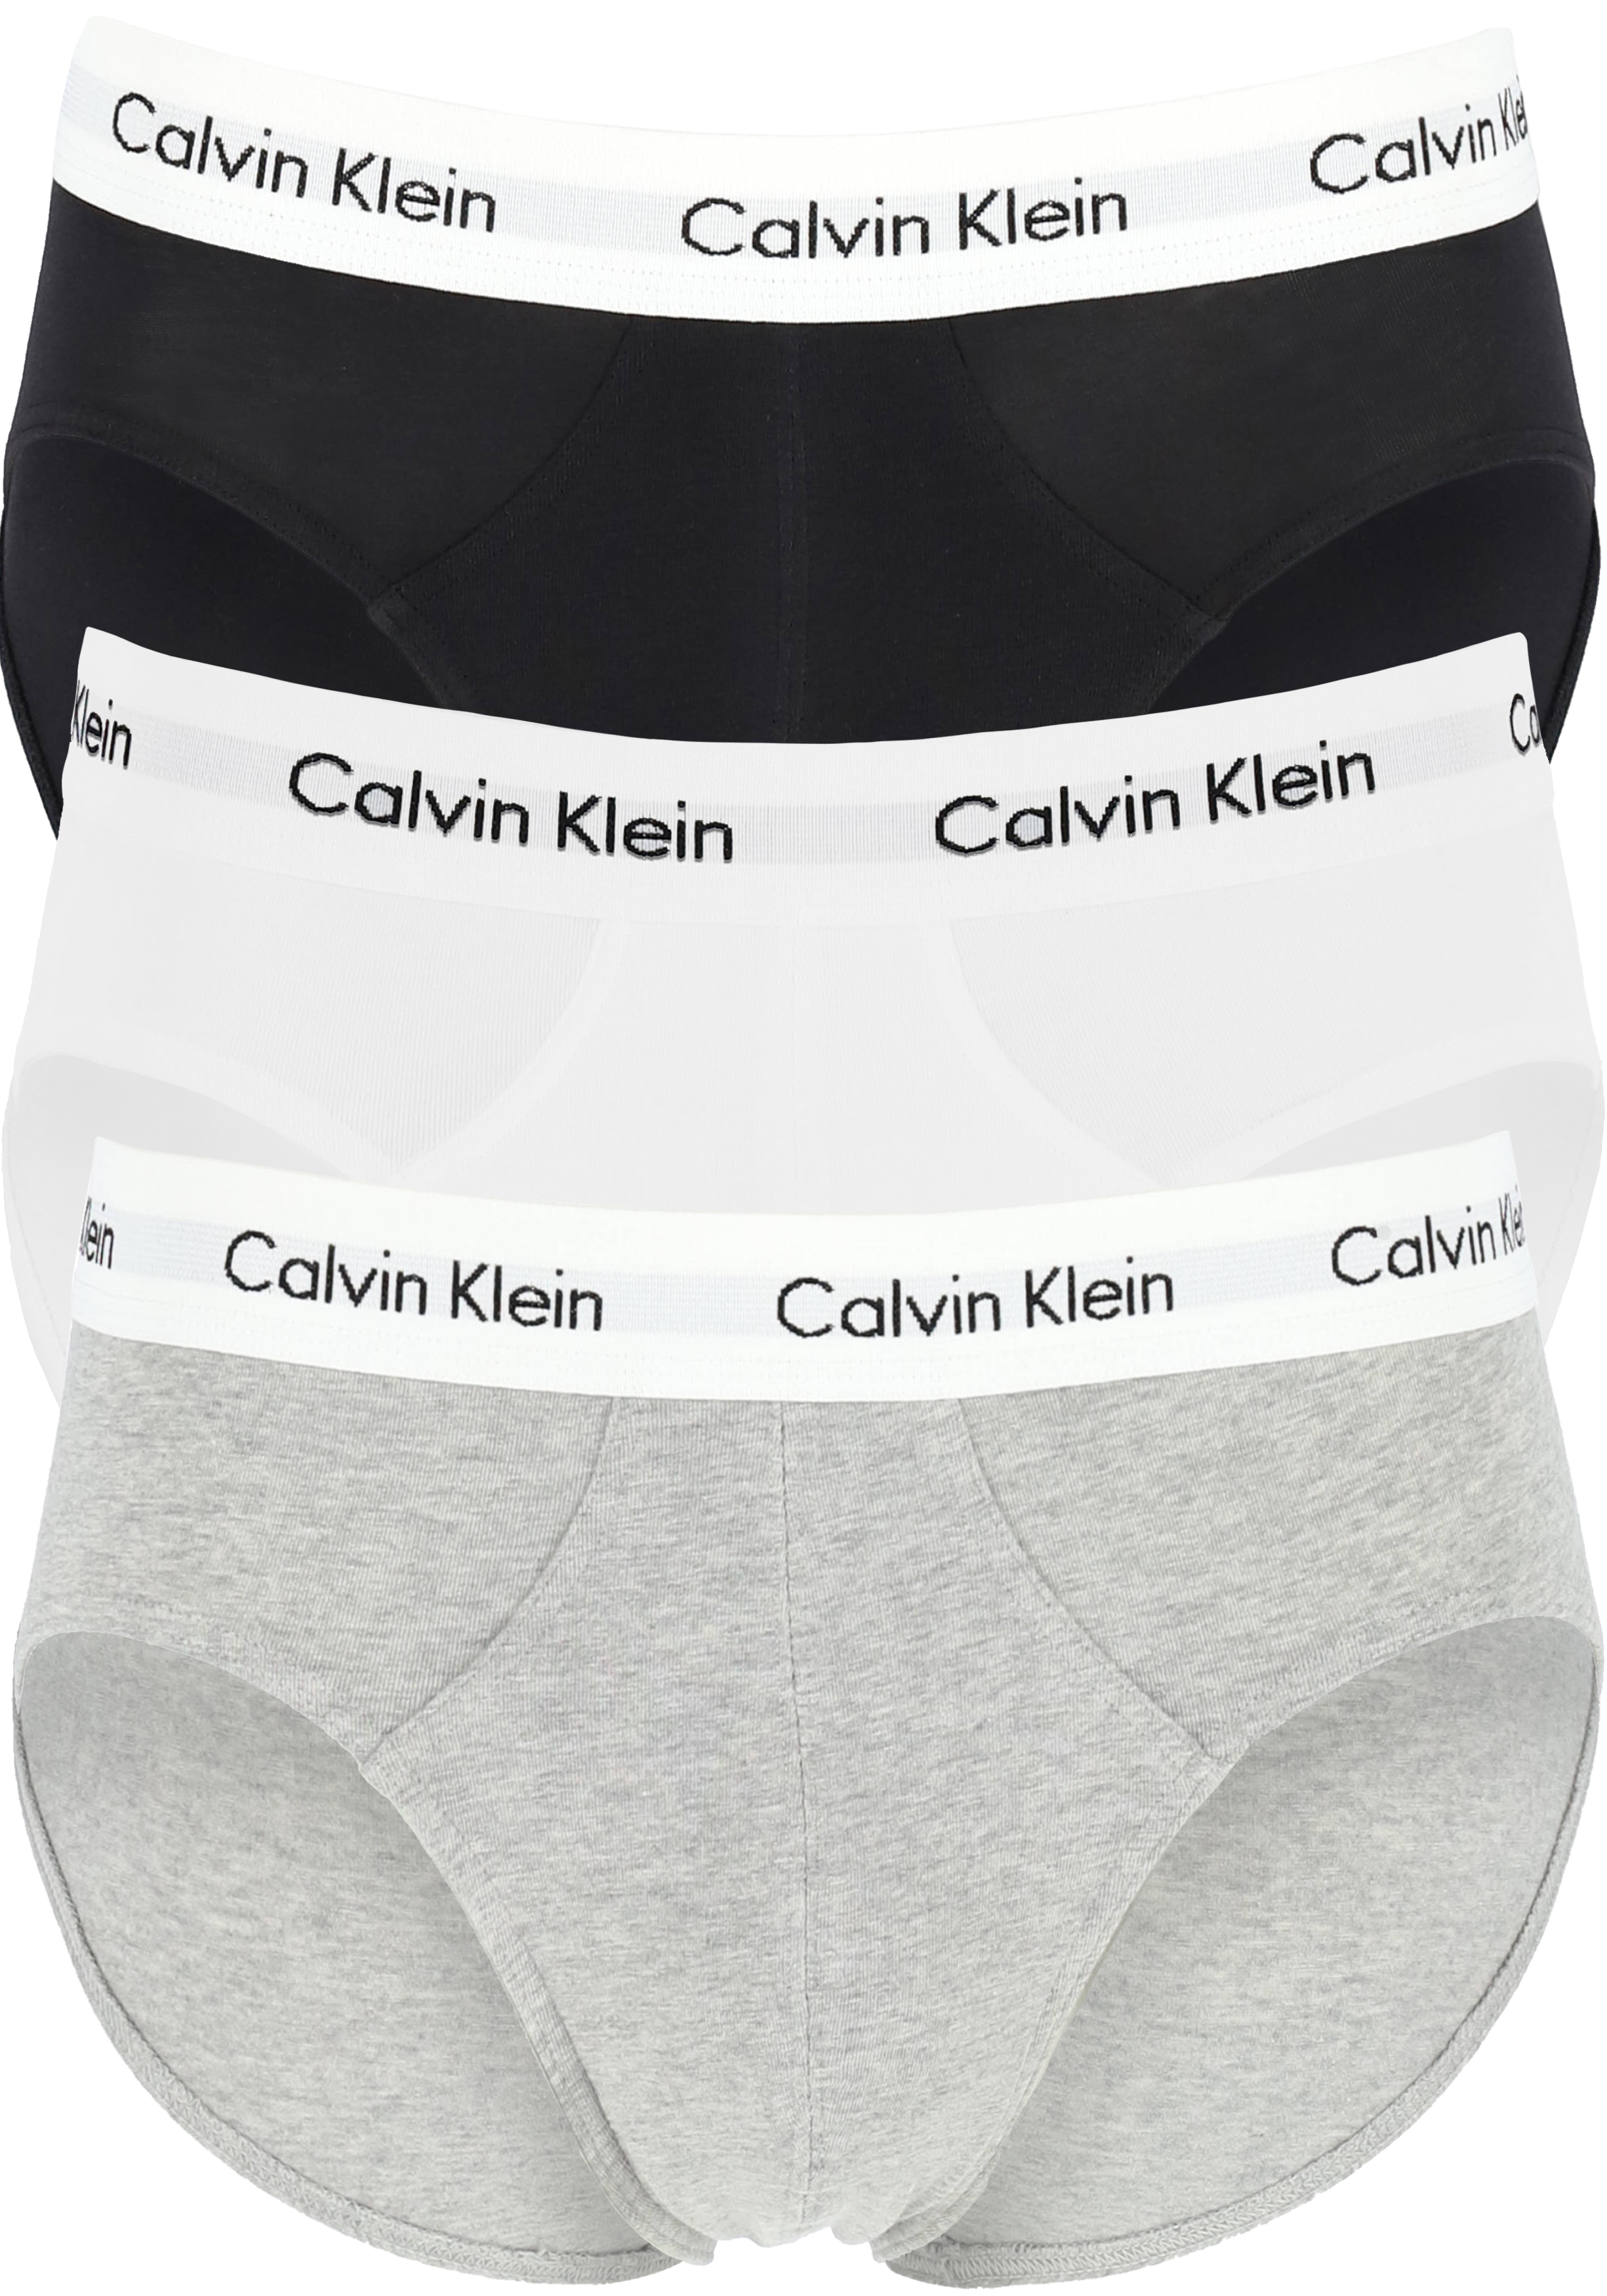 Begin Pornografie reactie Calvin Klein hipster brief (3-pack), heren slips, zwart, wit, grijs met...  - Shop de nieuwste voorjaarsmode